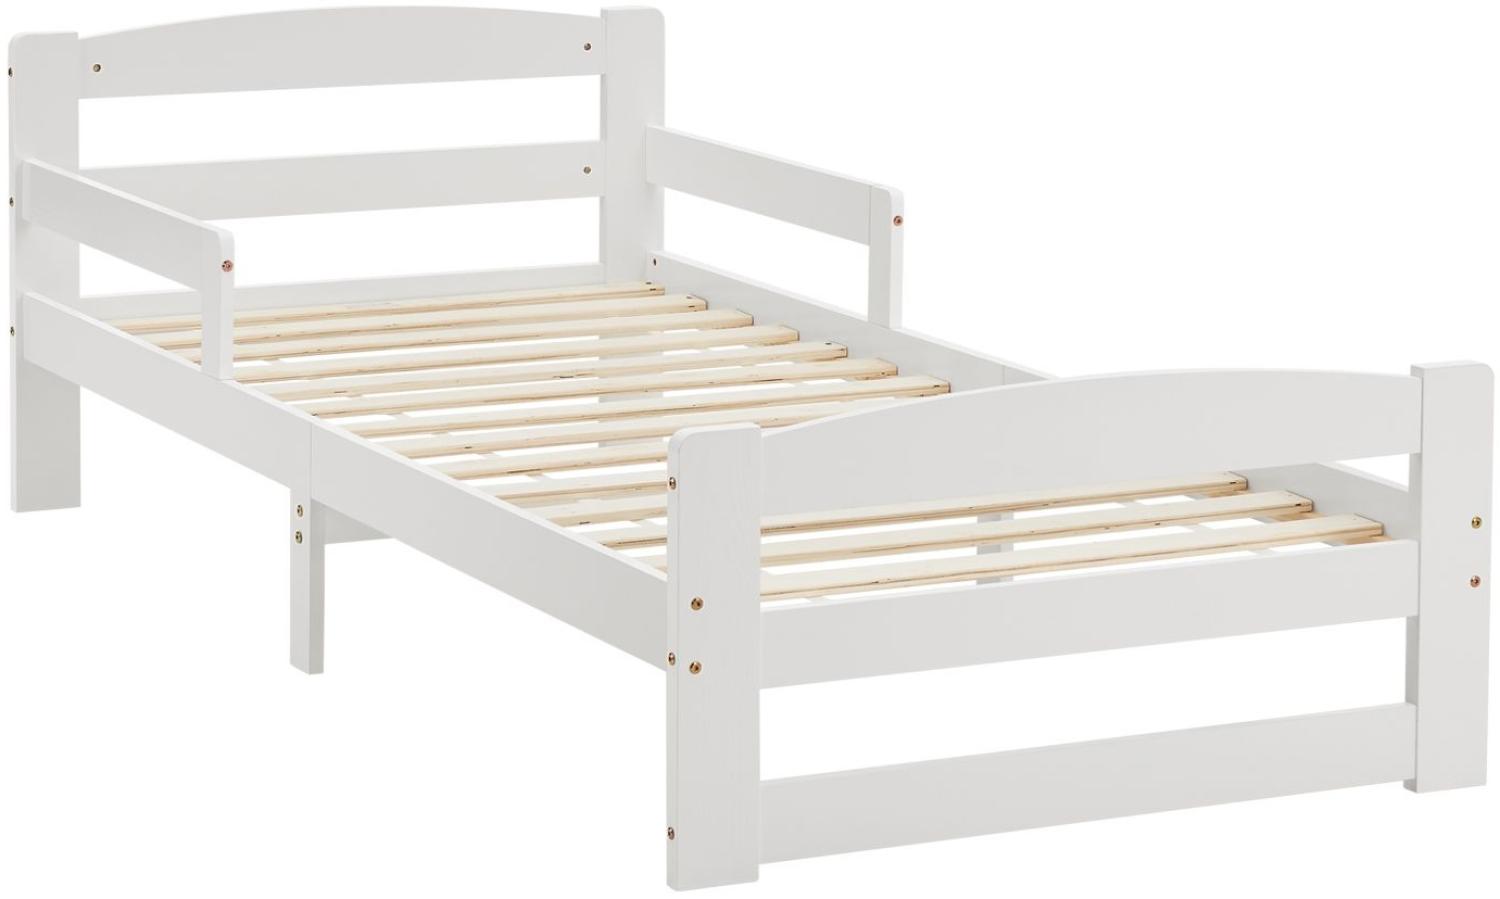 Juskys Jugendbett Arona 90x200 cm mit Lattenrost - Bettgestell aus Massivholz in Weiß - Einzelbett mit Rausfallschutz - Stauraum unter dem Bett Bild 1